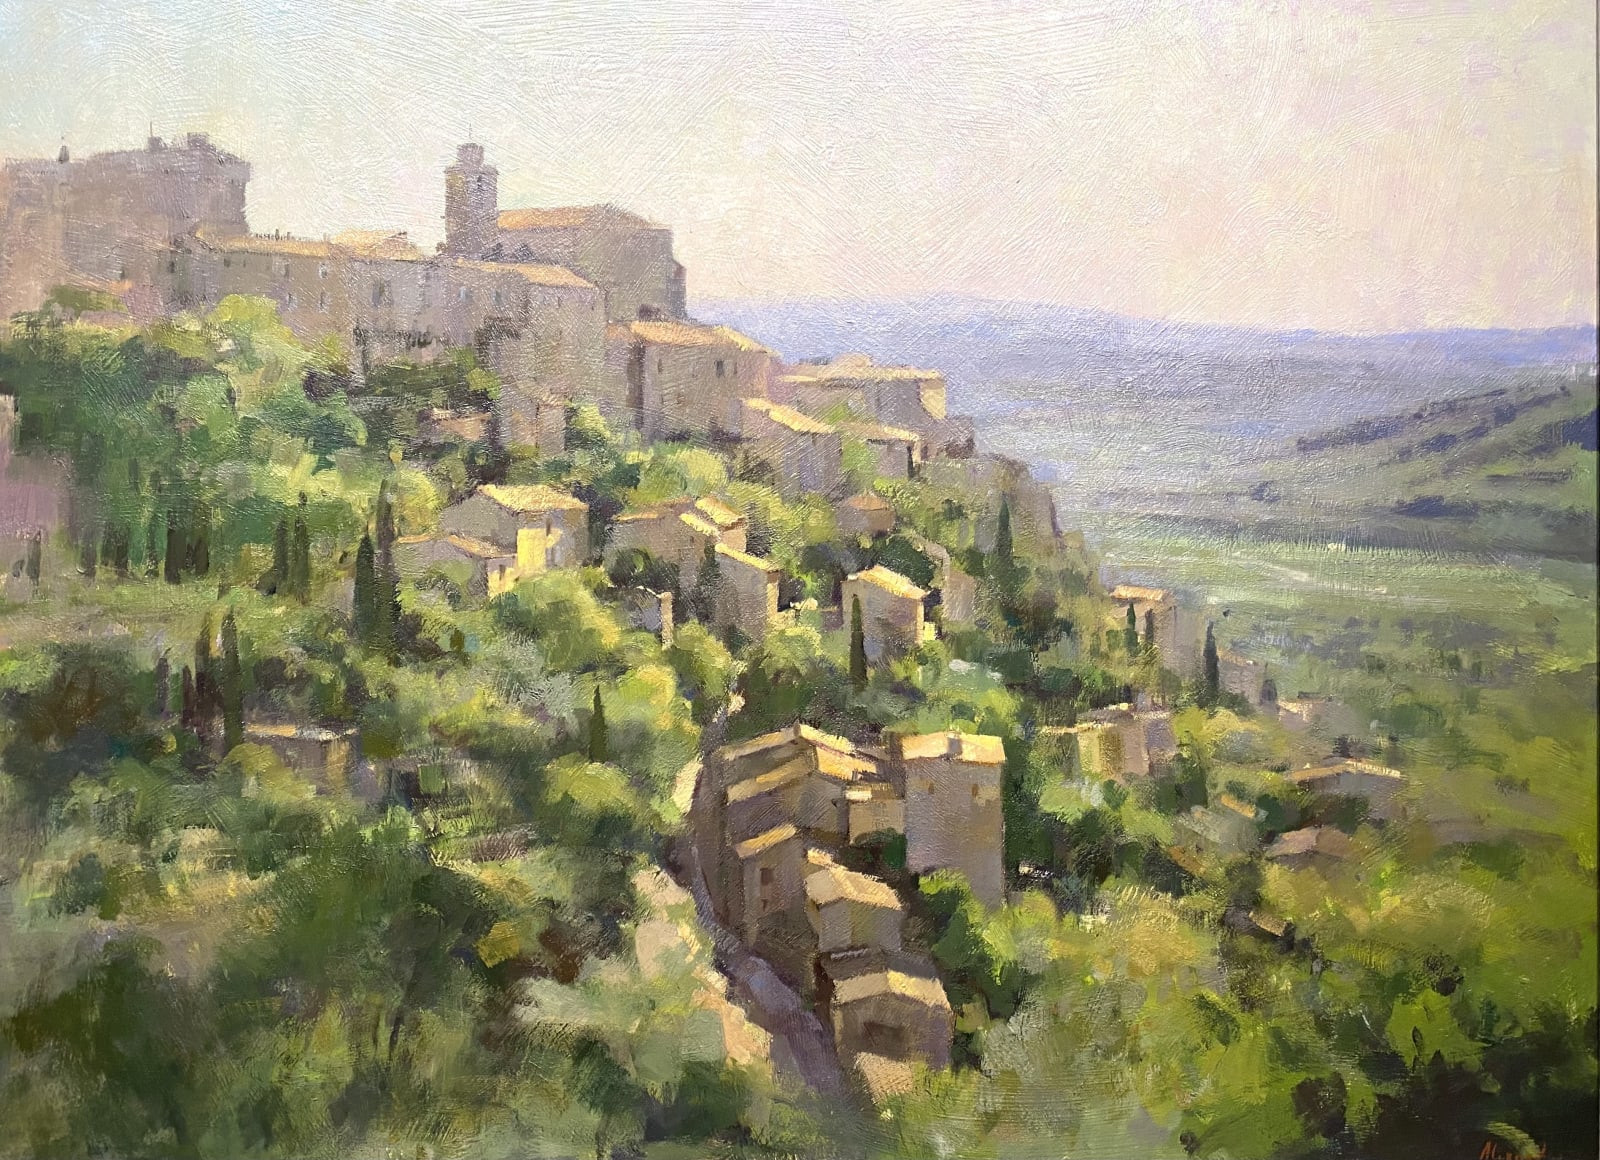 View towards Gordes, Provence